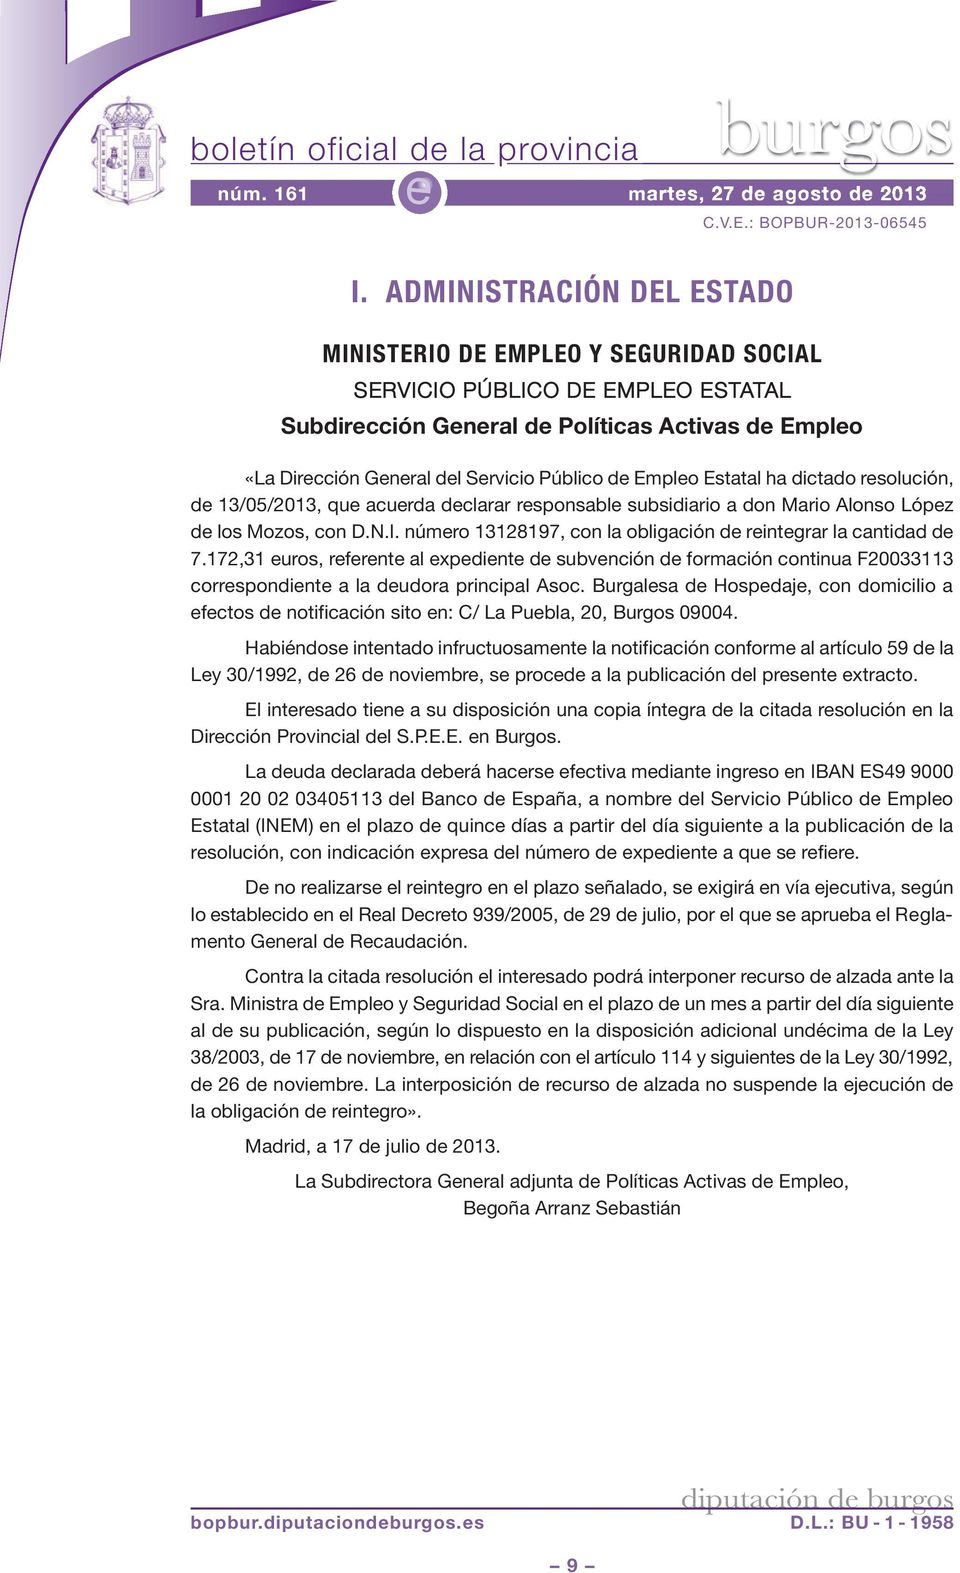 Estatal ha dictado rsolución, d 13/05/2013, qu acurda dclarar rsponsabl subsidiario a don Mario Alonso Lópz d los Mozos, con D.N.I. númro 13128197, con la obligación d rintgrar la cantidad d 7.